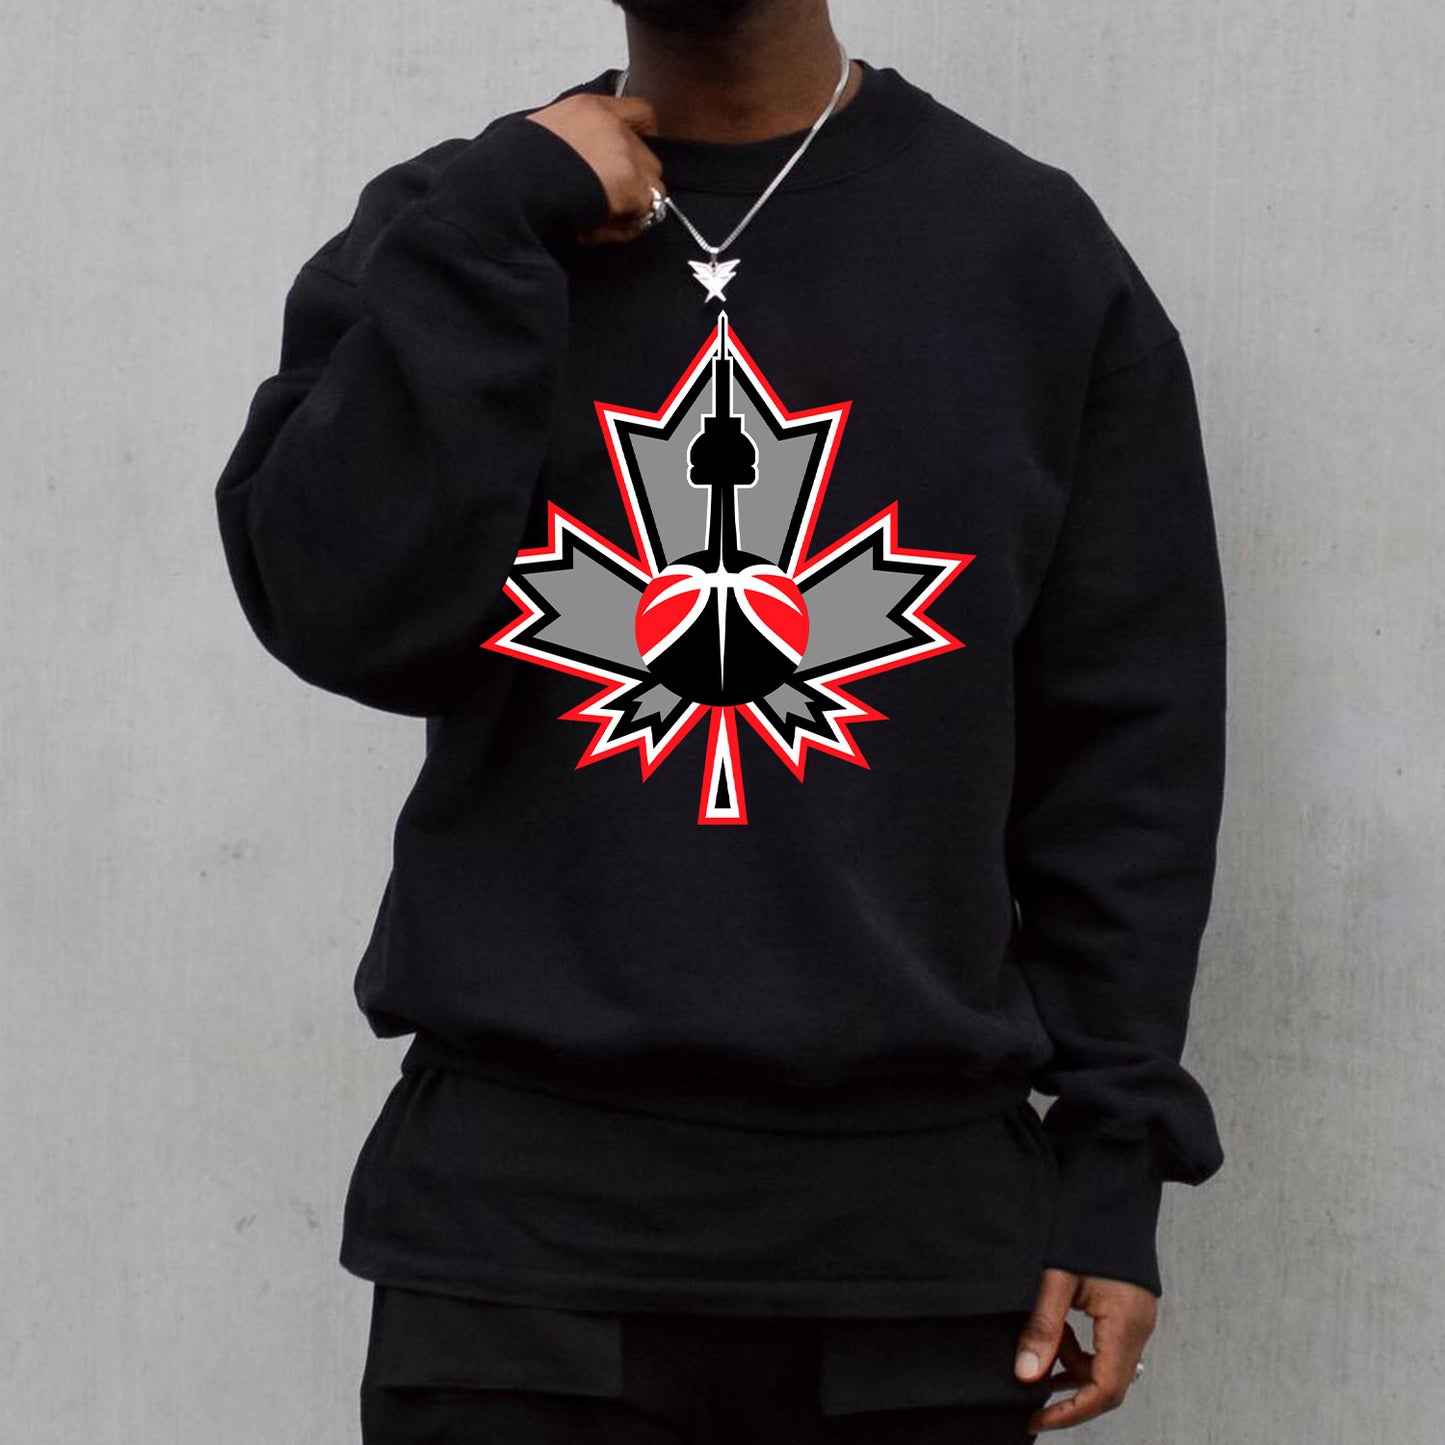 Toronto Raptors Men's Casual Sweatshirt